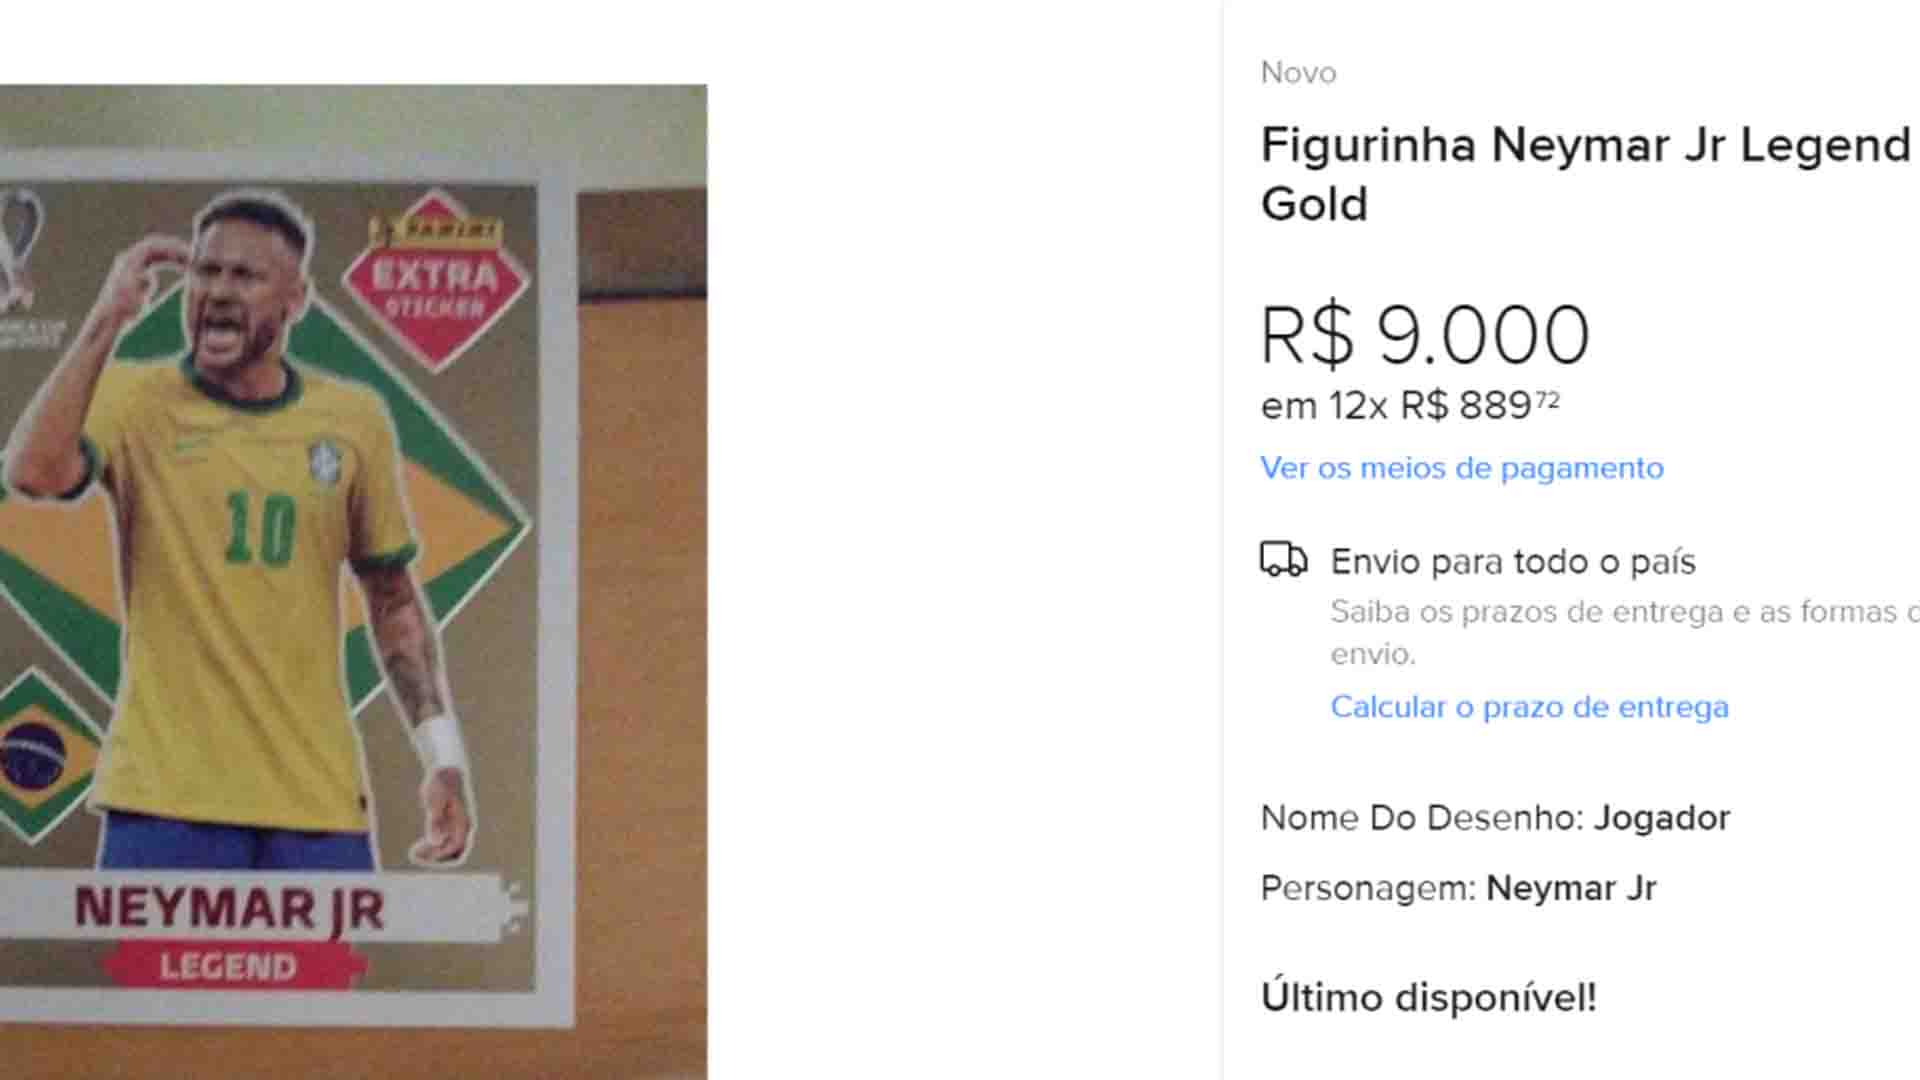 ÁLBUM DA COPA: Figurinha rara de Mbappé está sendo vendida por